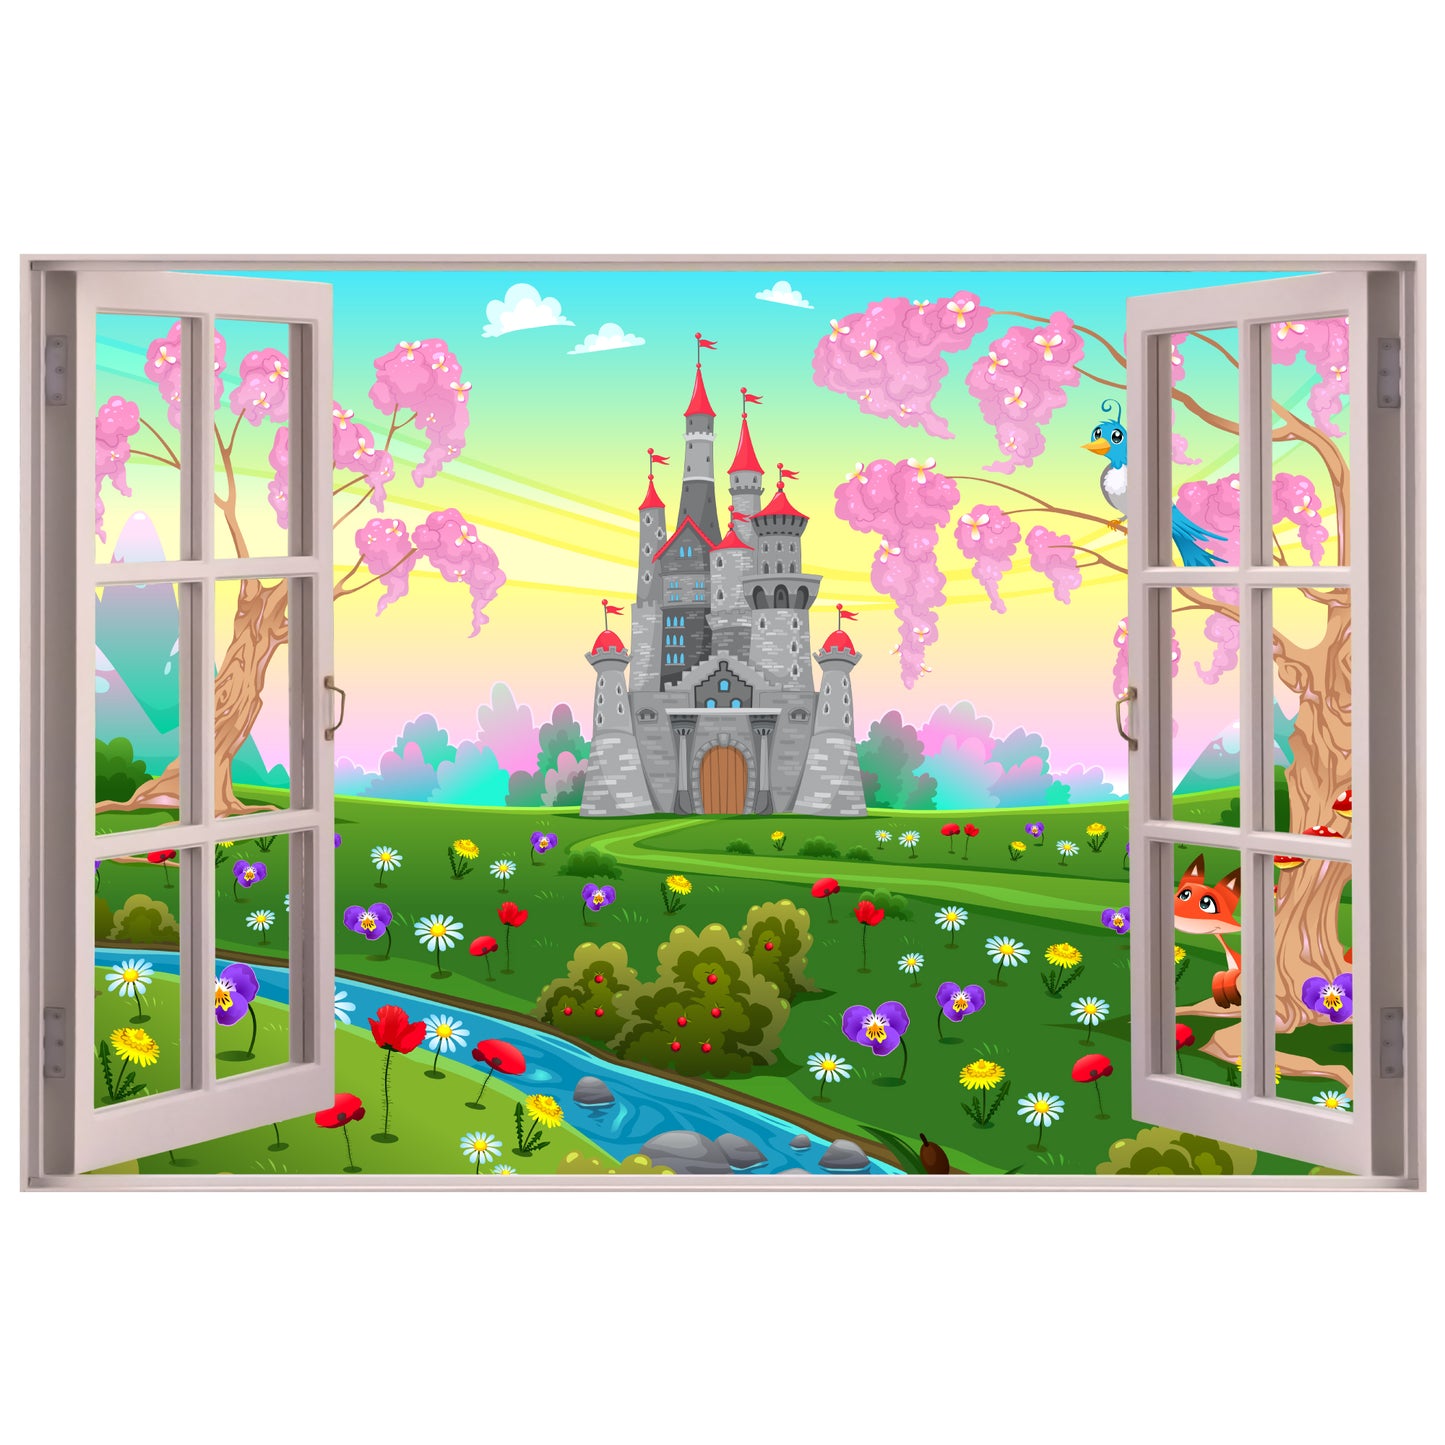 Princess Wall Sticker - Castle Flowers Open Window Decal Art